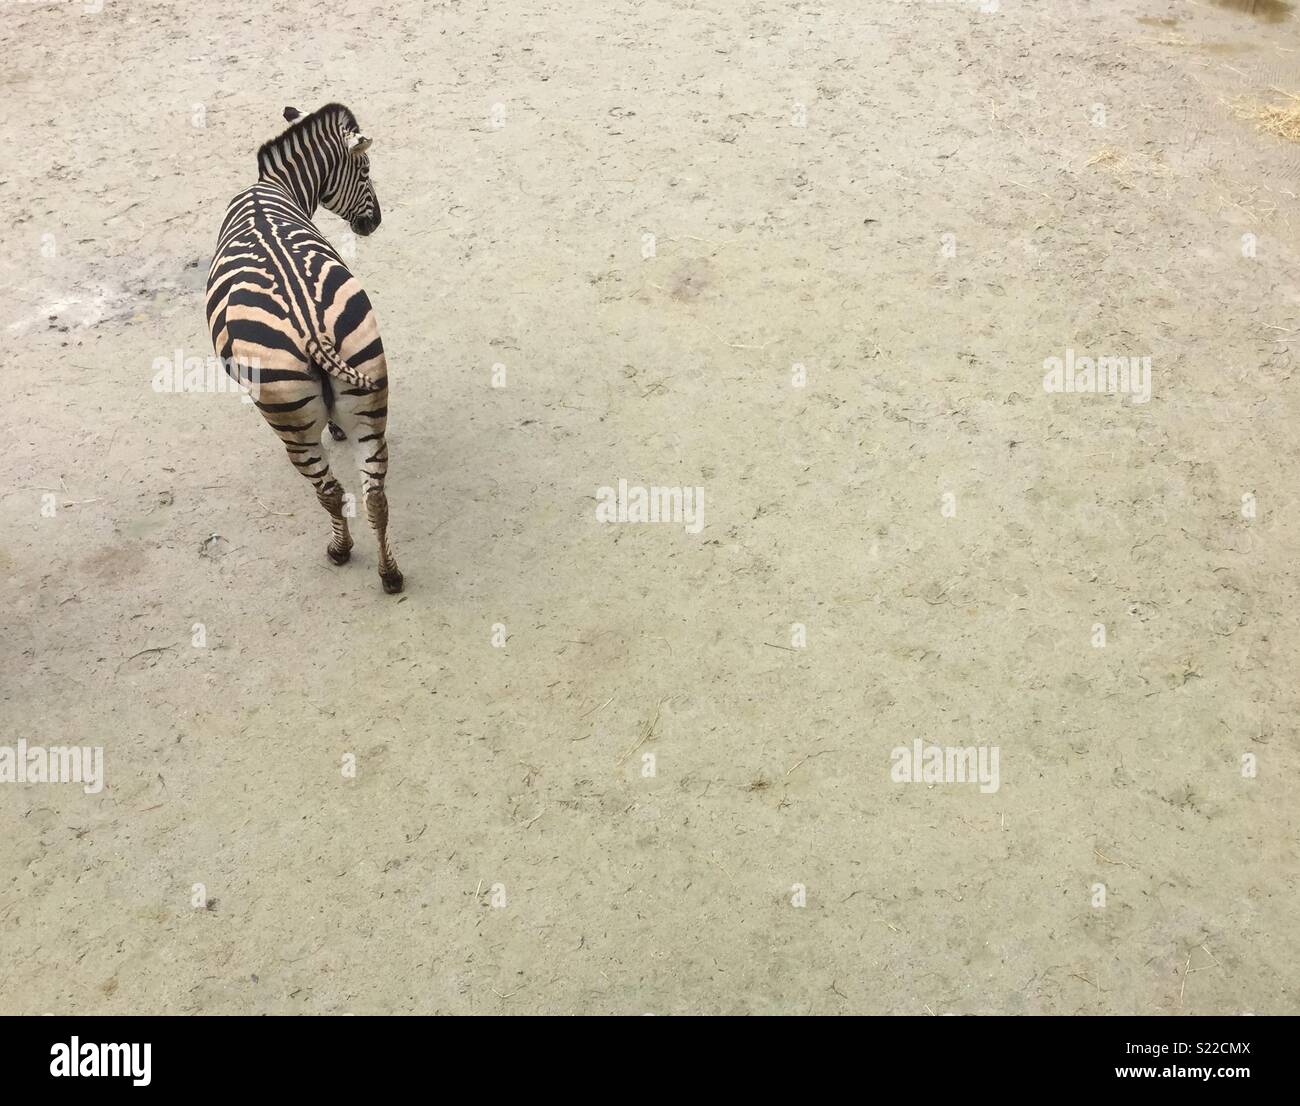 Seul zebra de ci-dessus sur fond uni. Banque D'Images